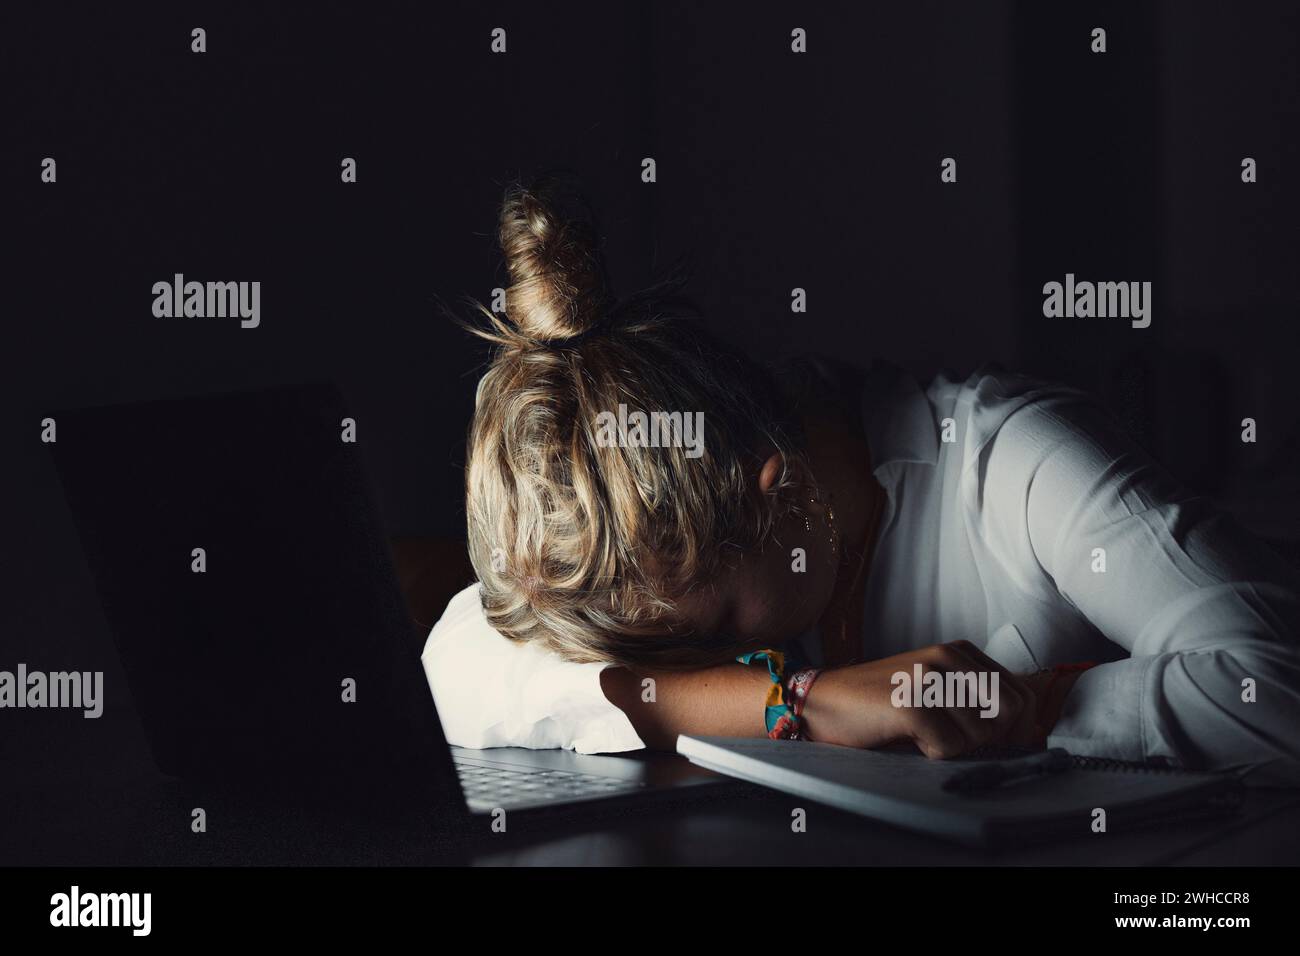 Stanca teenager studentessa universitaria caucasica si addormenta esausta dopo un esame di apprendimento difficile, povera giovane donna pigra che dorme seduto alla scrivania a pagamento Foto Stock